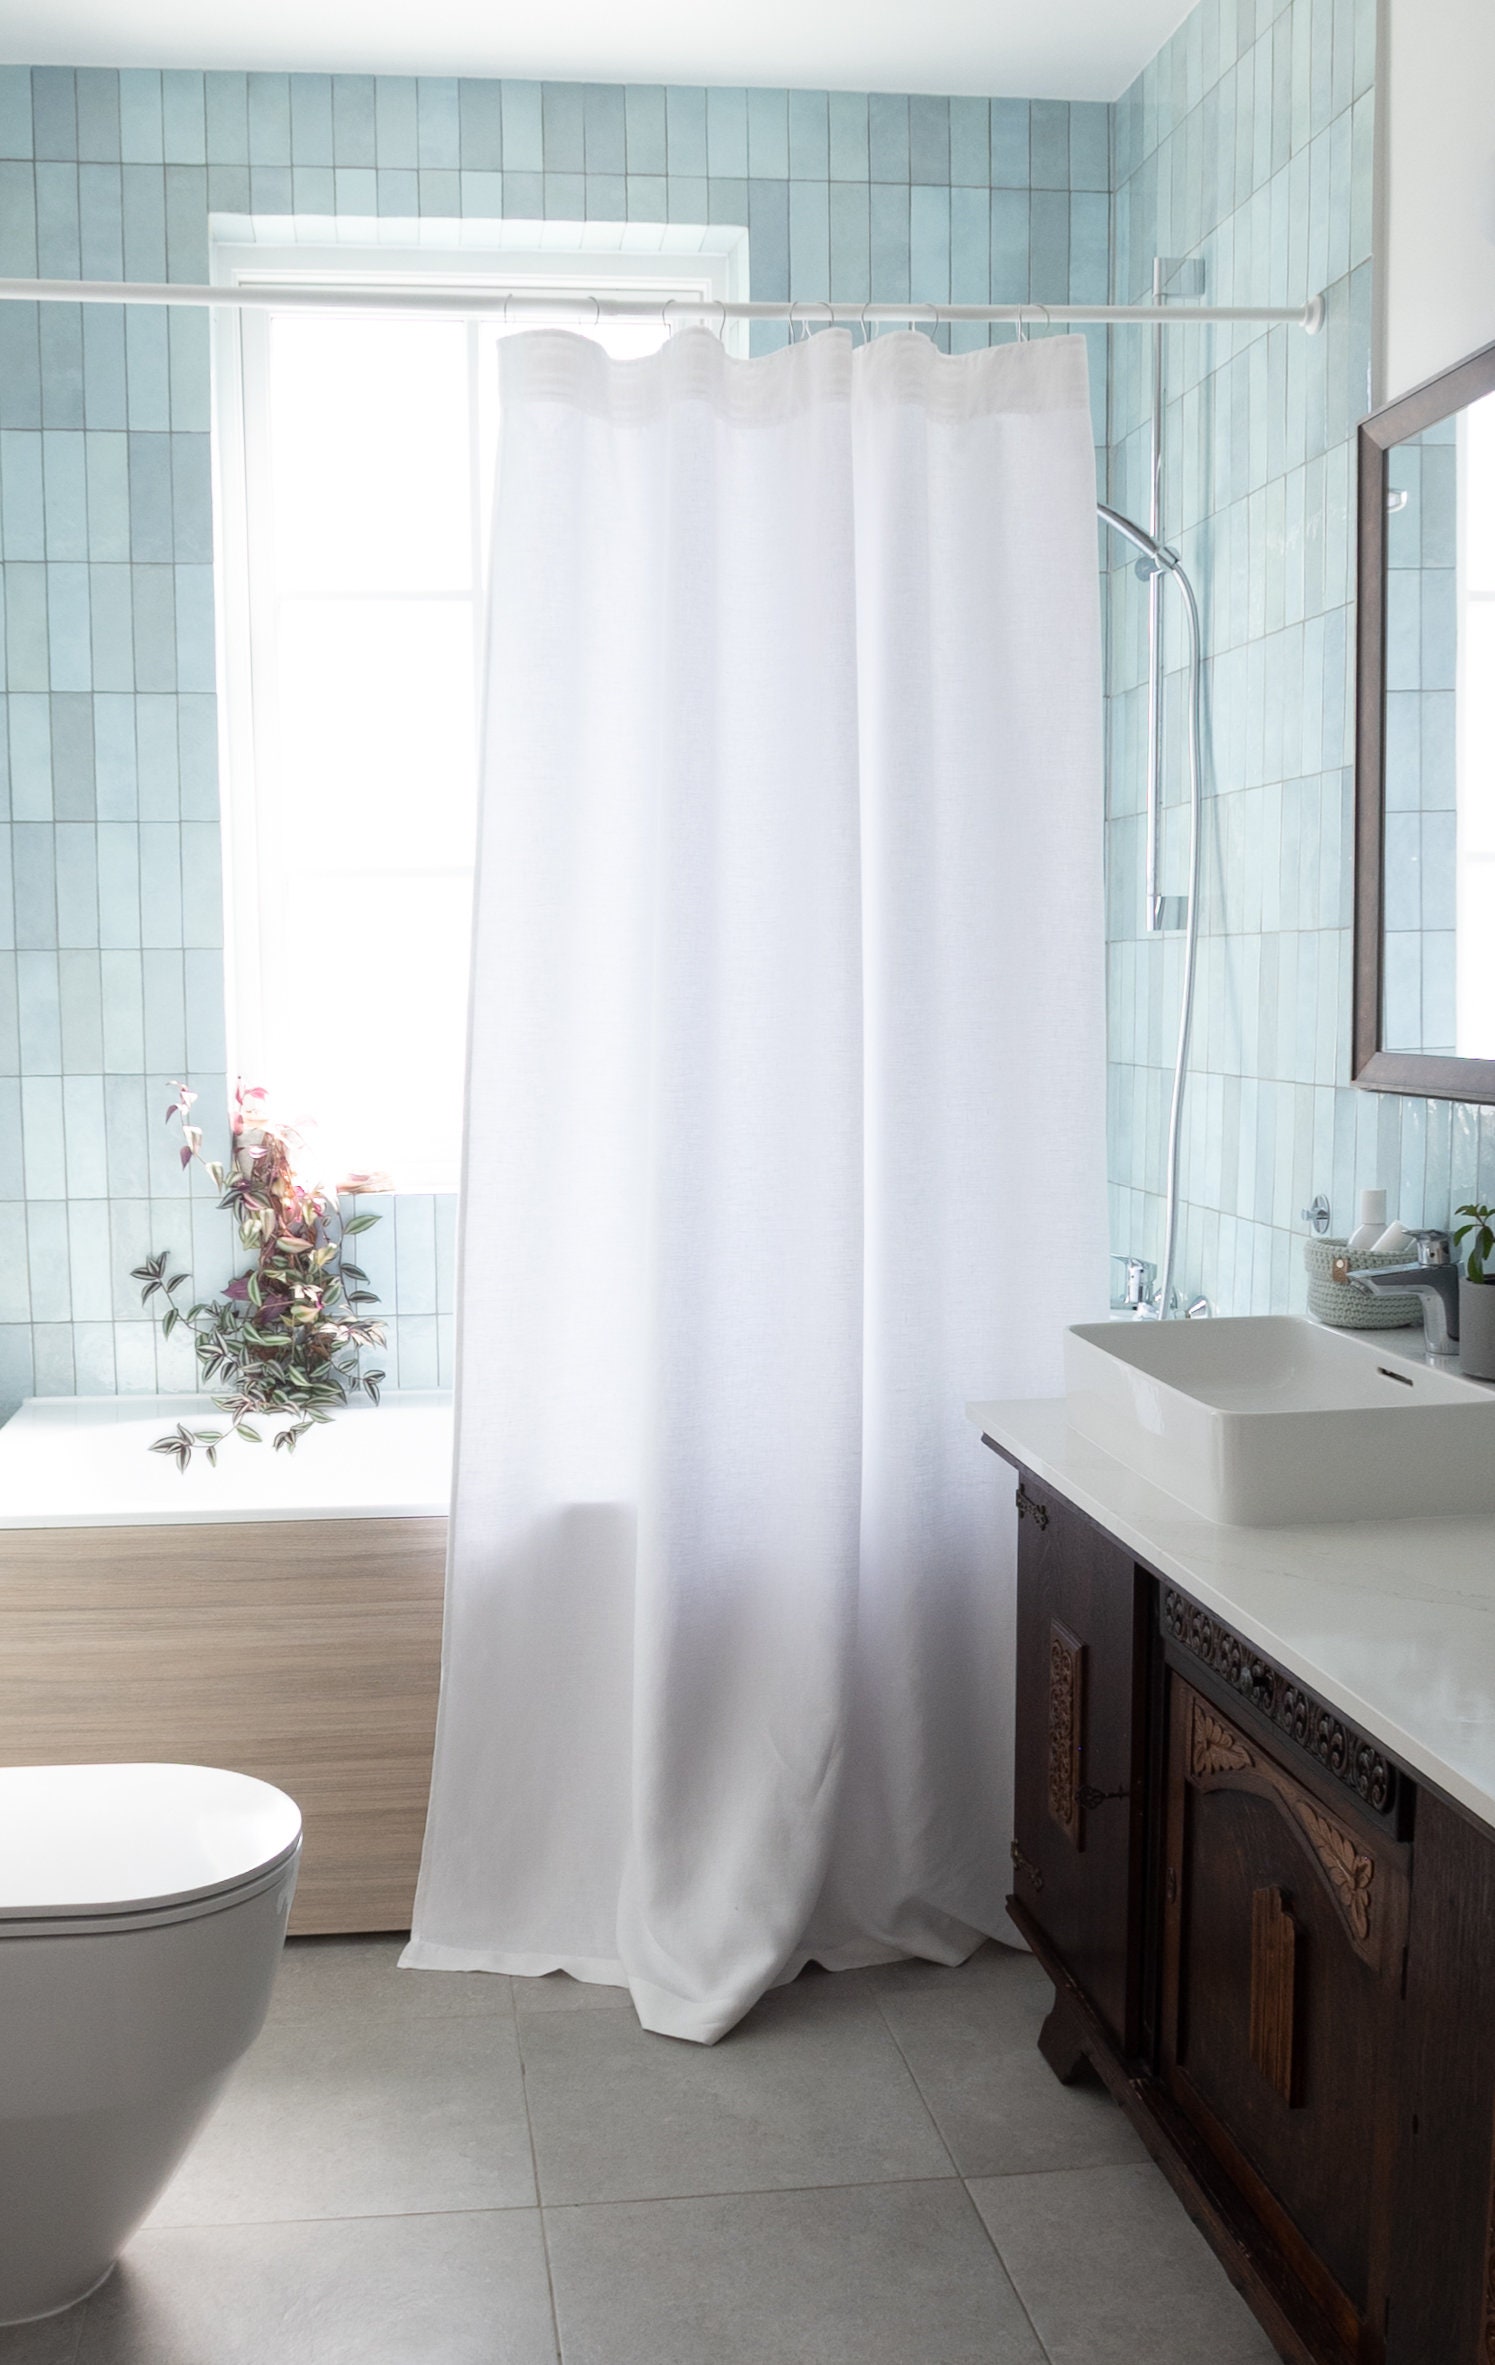 Cortina de ducha geométrica blanca, cortina de ducha de moda en puntos  blancos y negros, cortinas de ducha de tela impermeable para baño con 72x72  pulgadas.